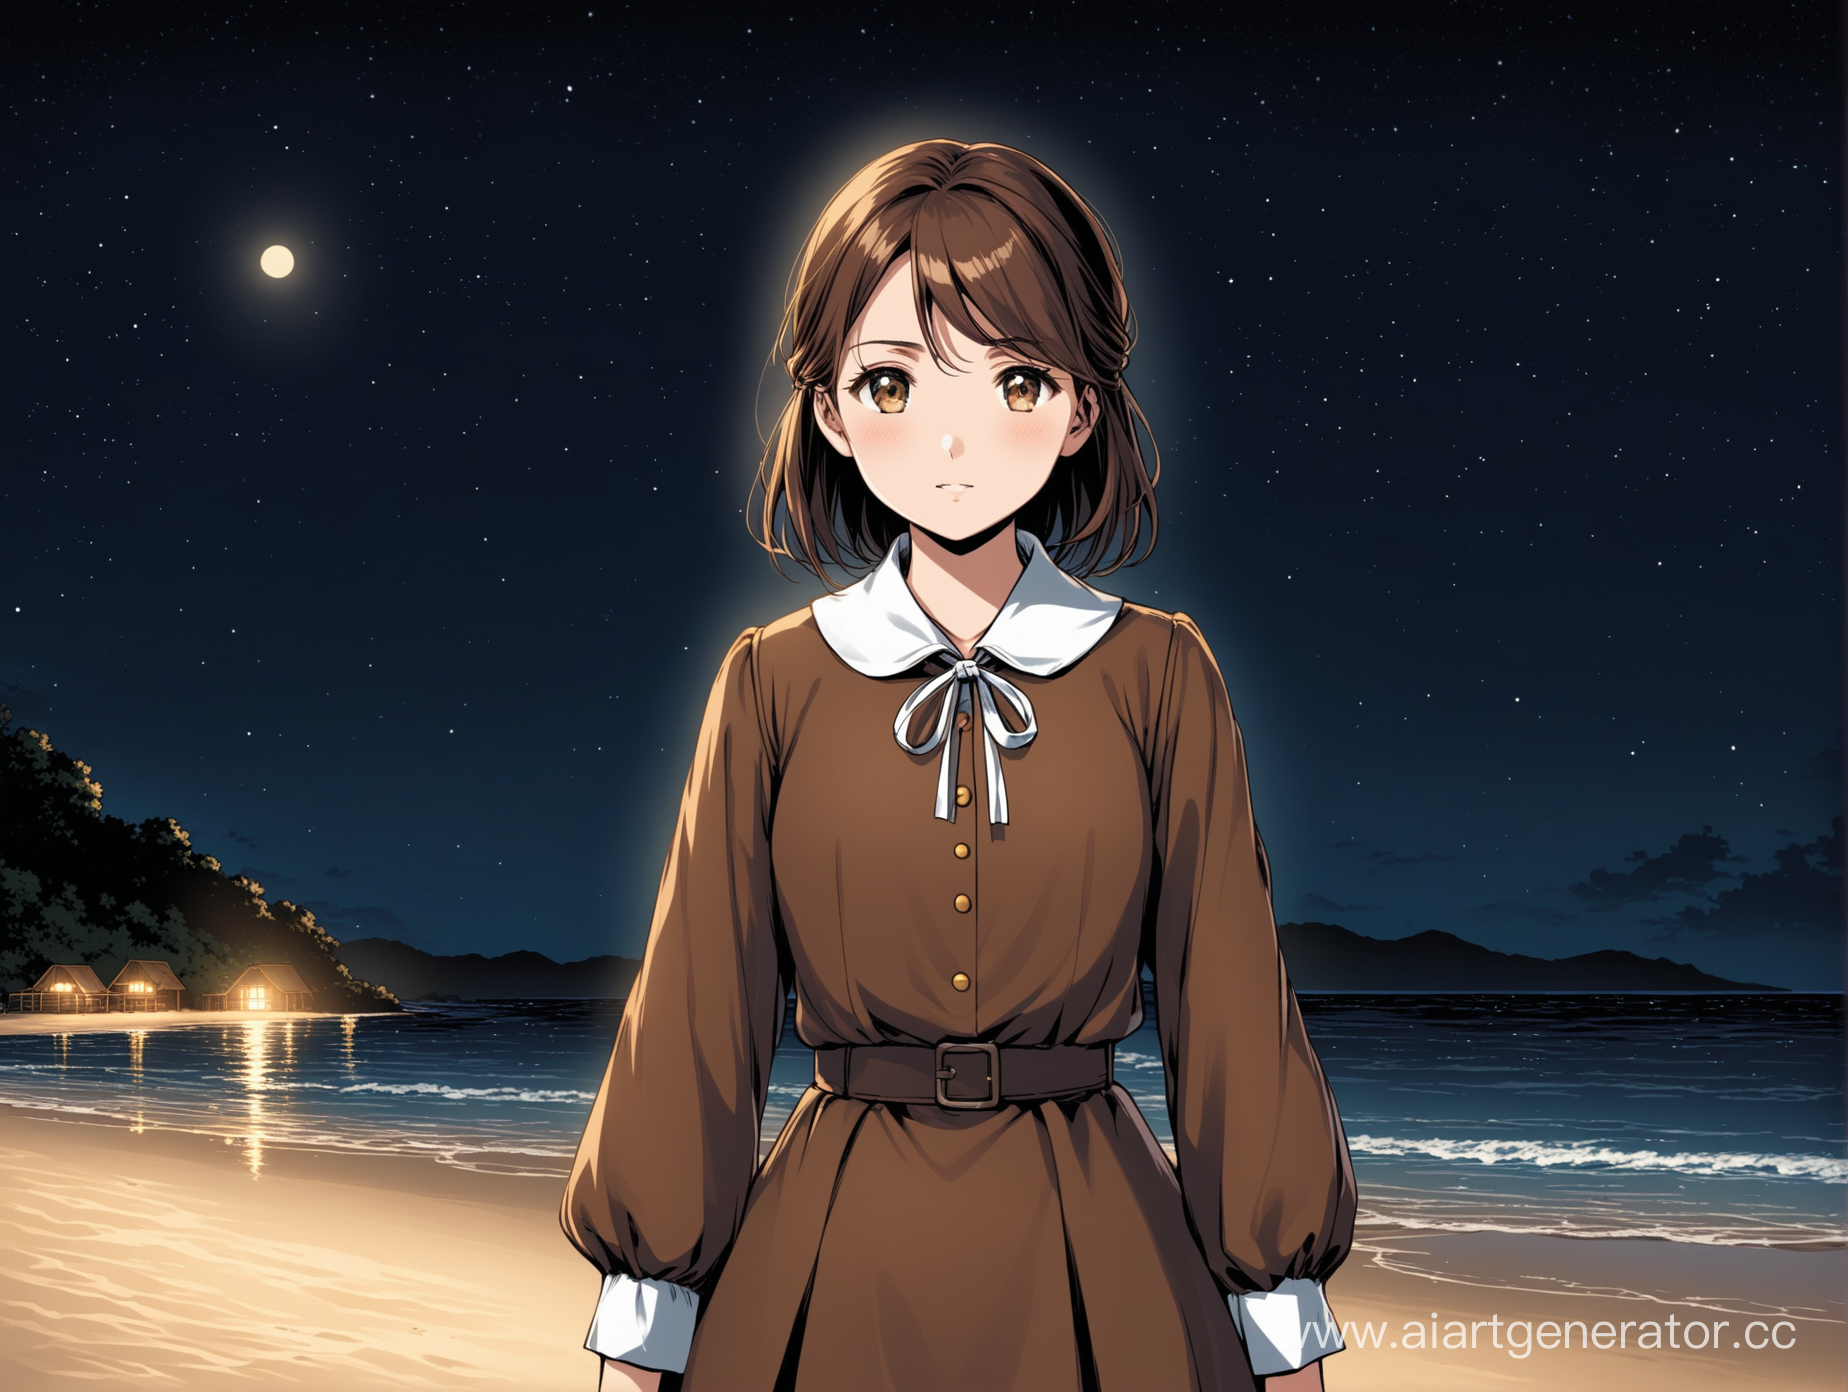 девушка с карими глазами,  русыми длинными волосами, в пионерской форме ,стоит на пляже ночью